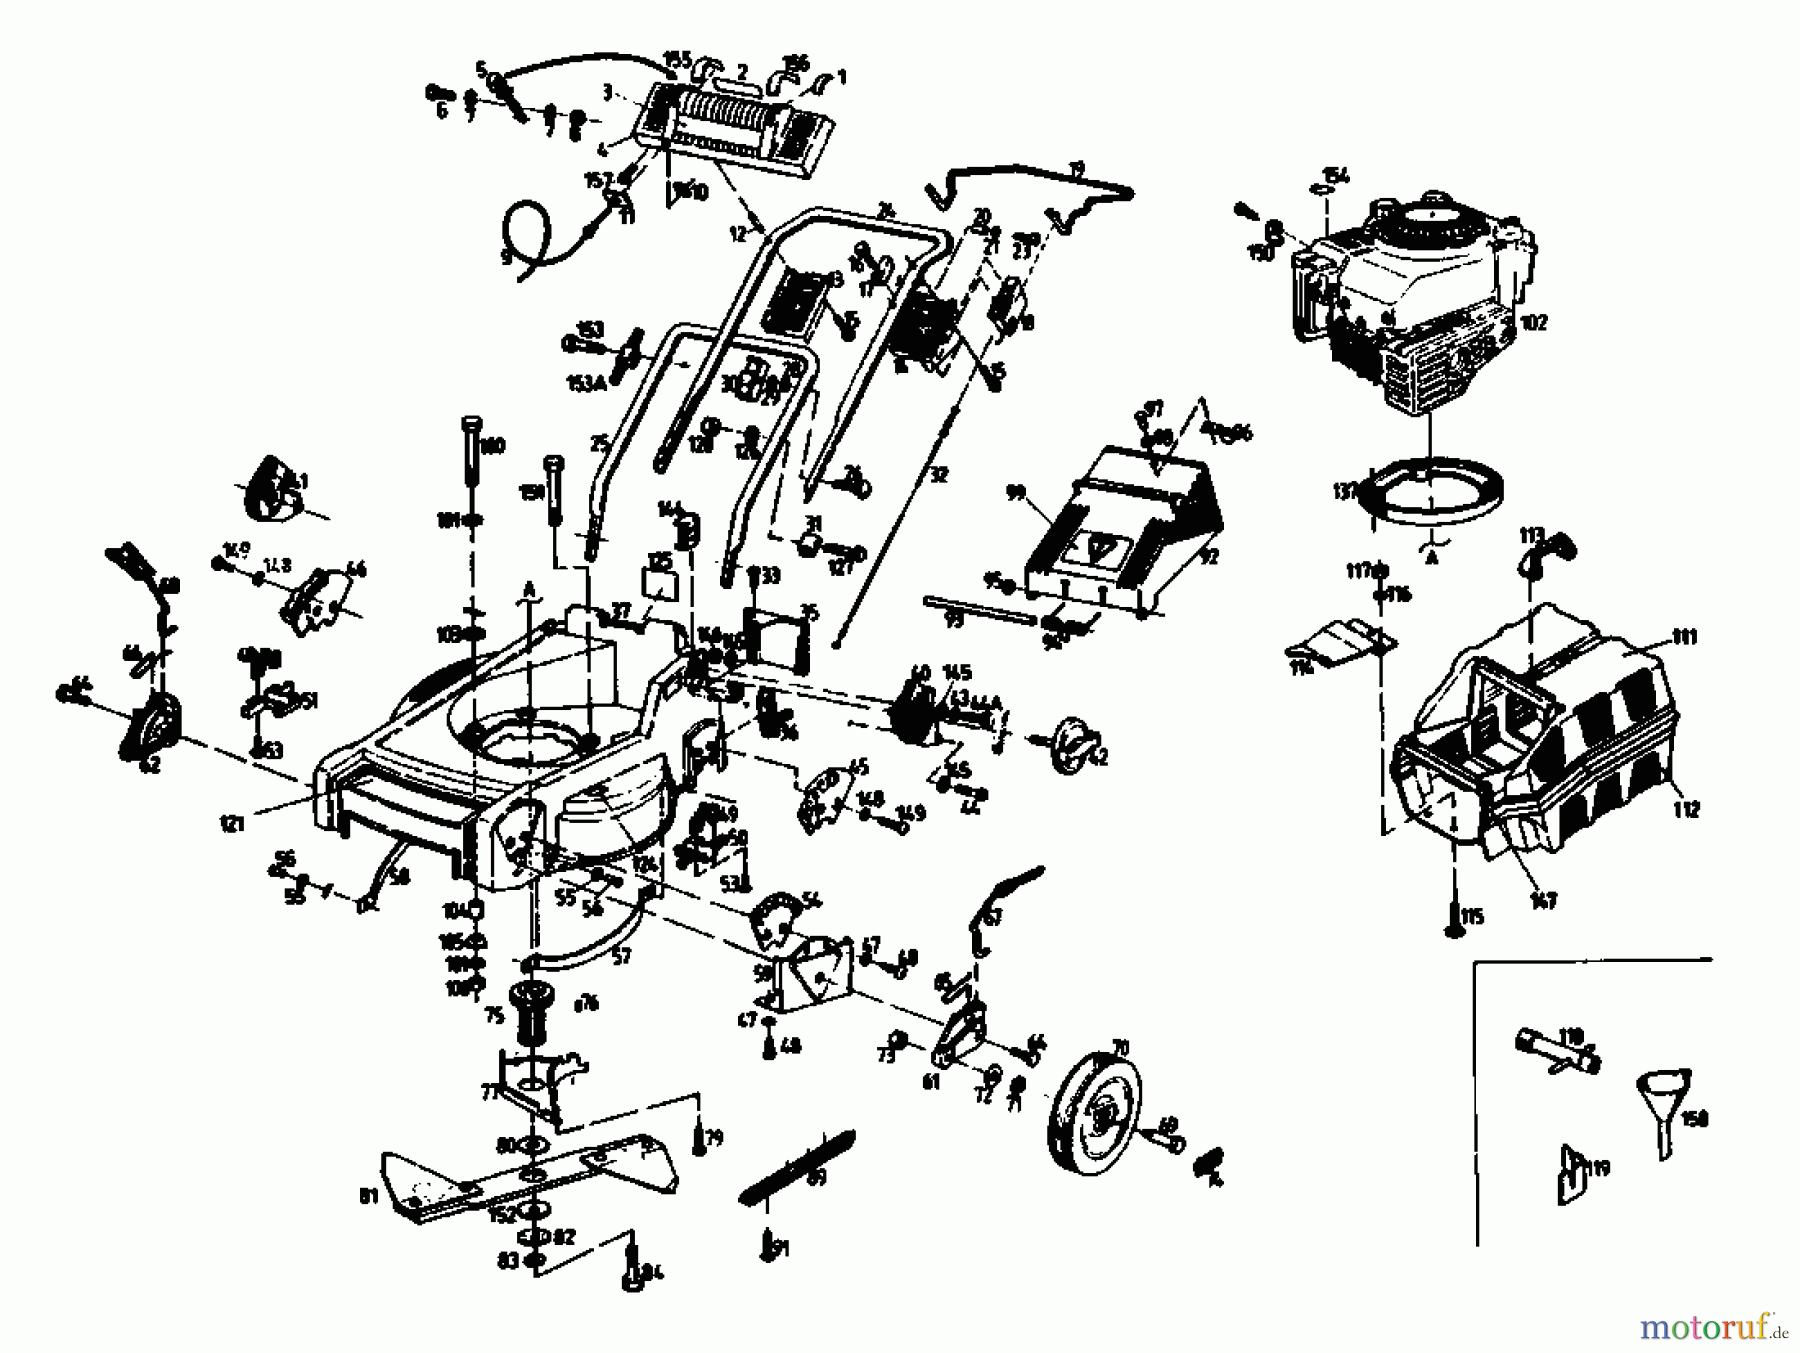  Gutbrod Motormäher mit Antrieb HB 47 R-4 BS 04001.01  (1992) Grundgerät